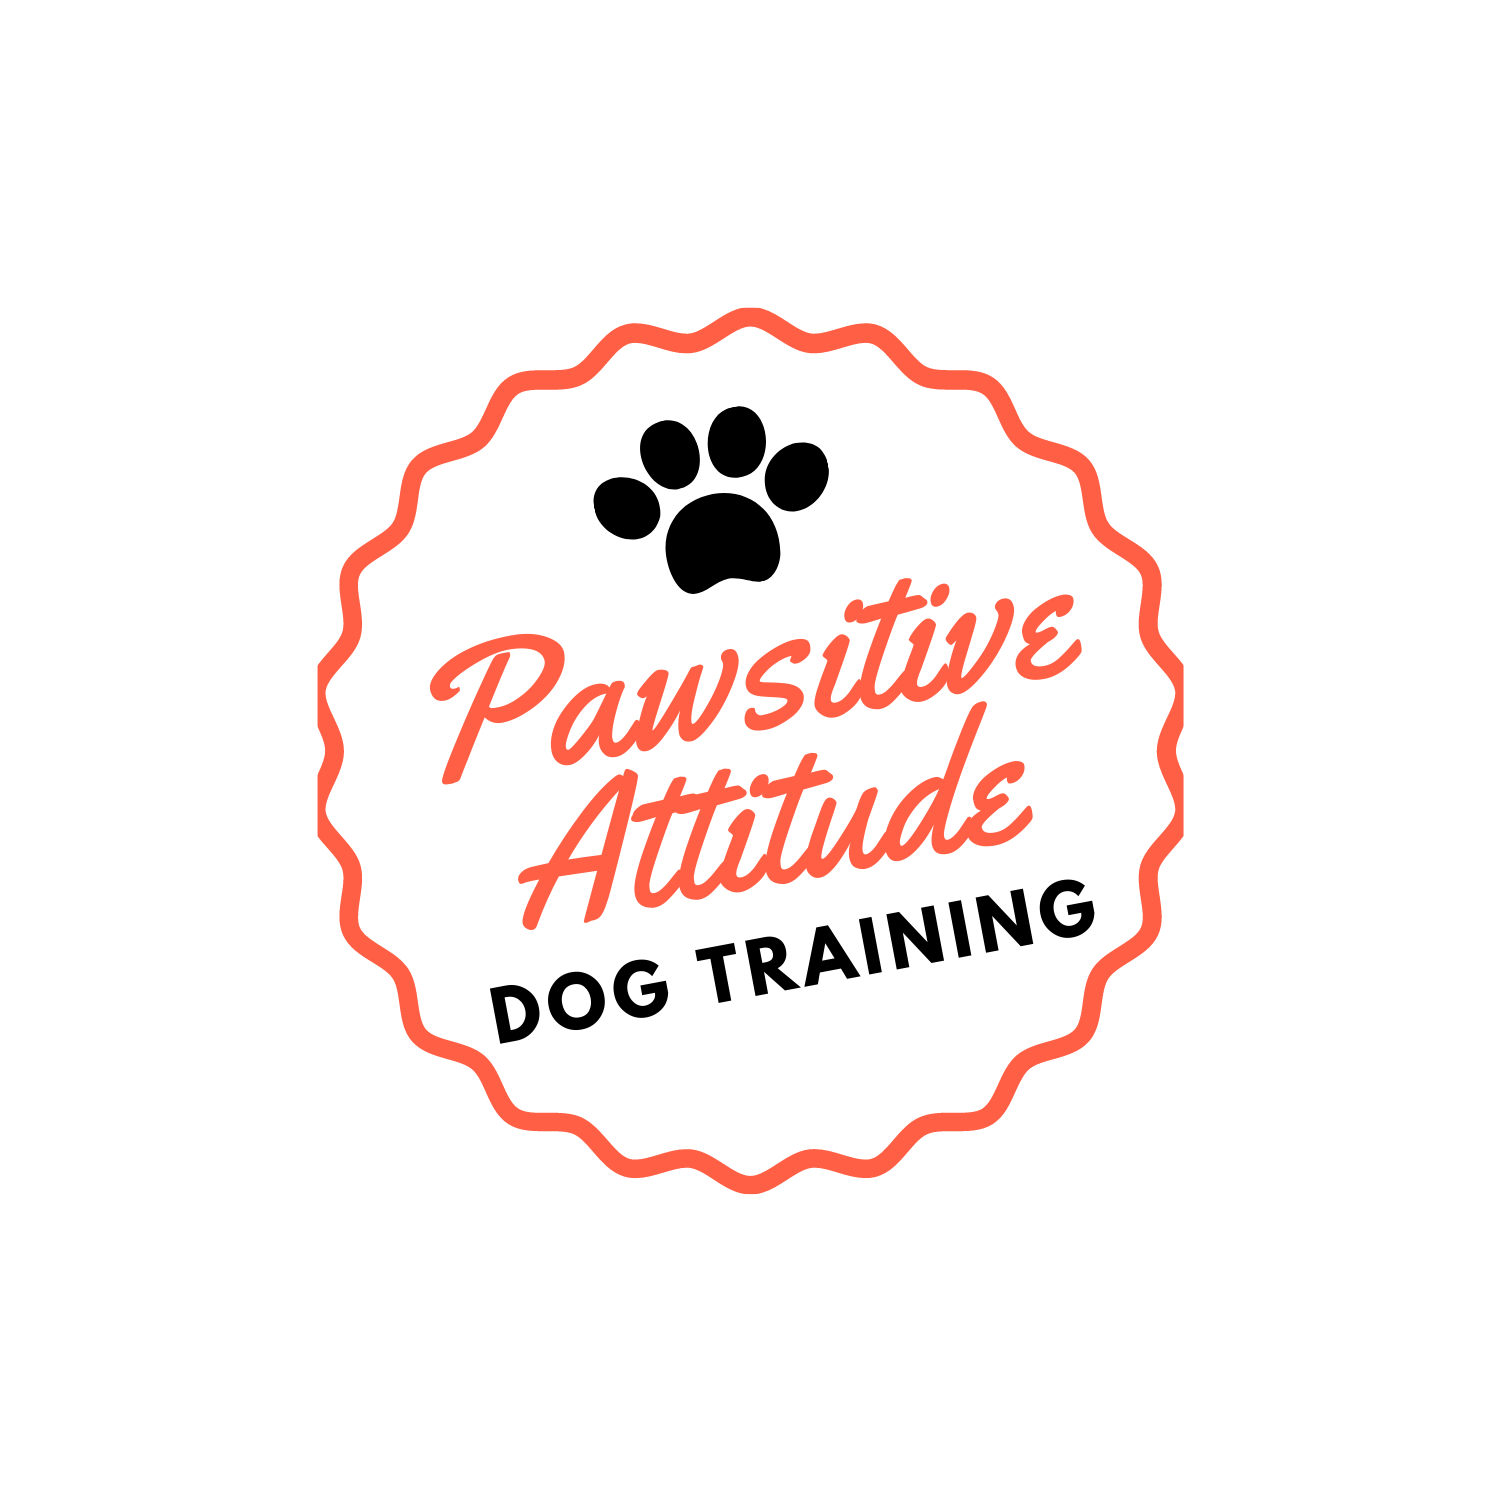 Pawsitive Attitude Dog Training